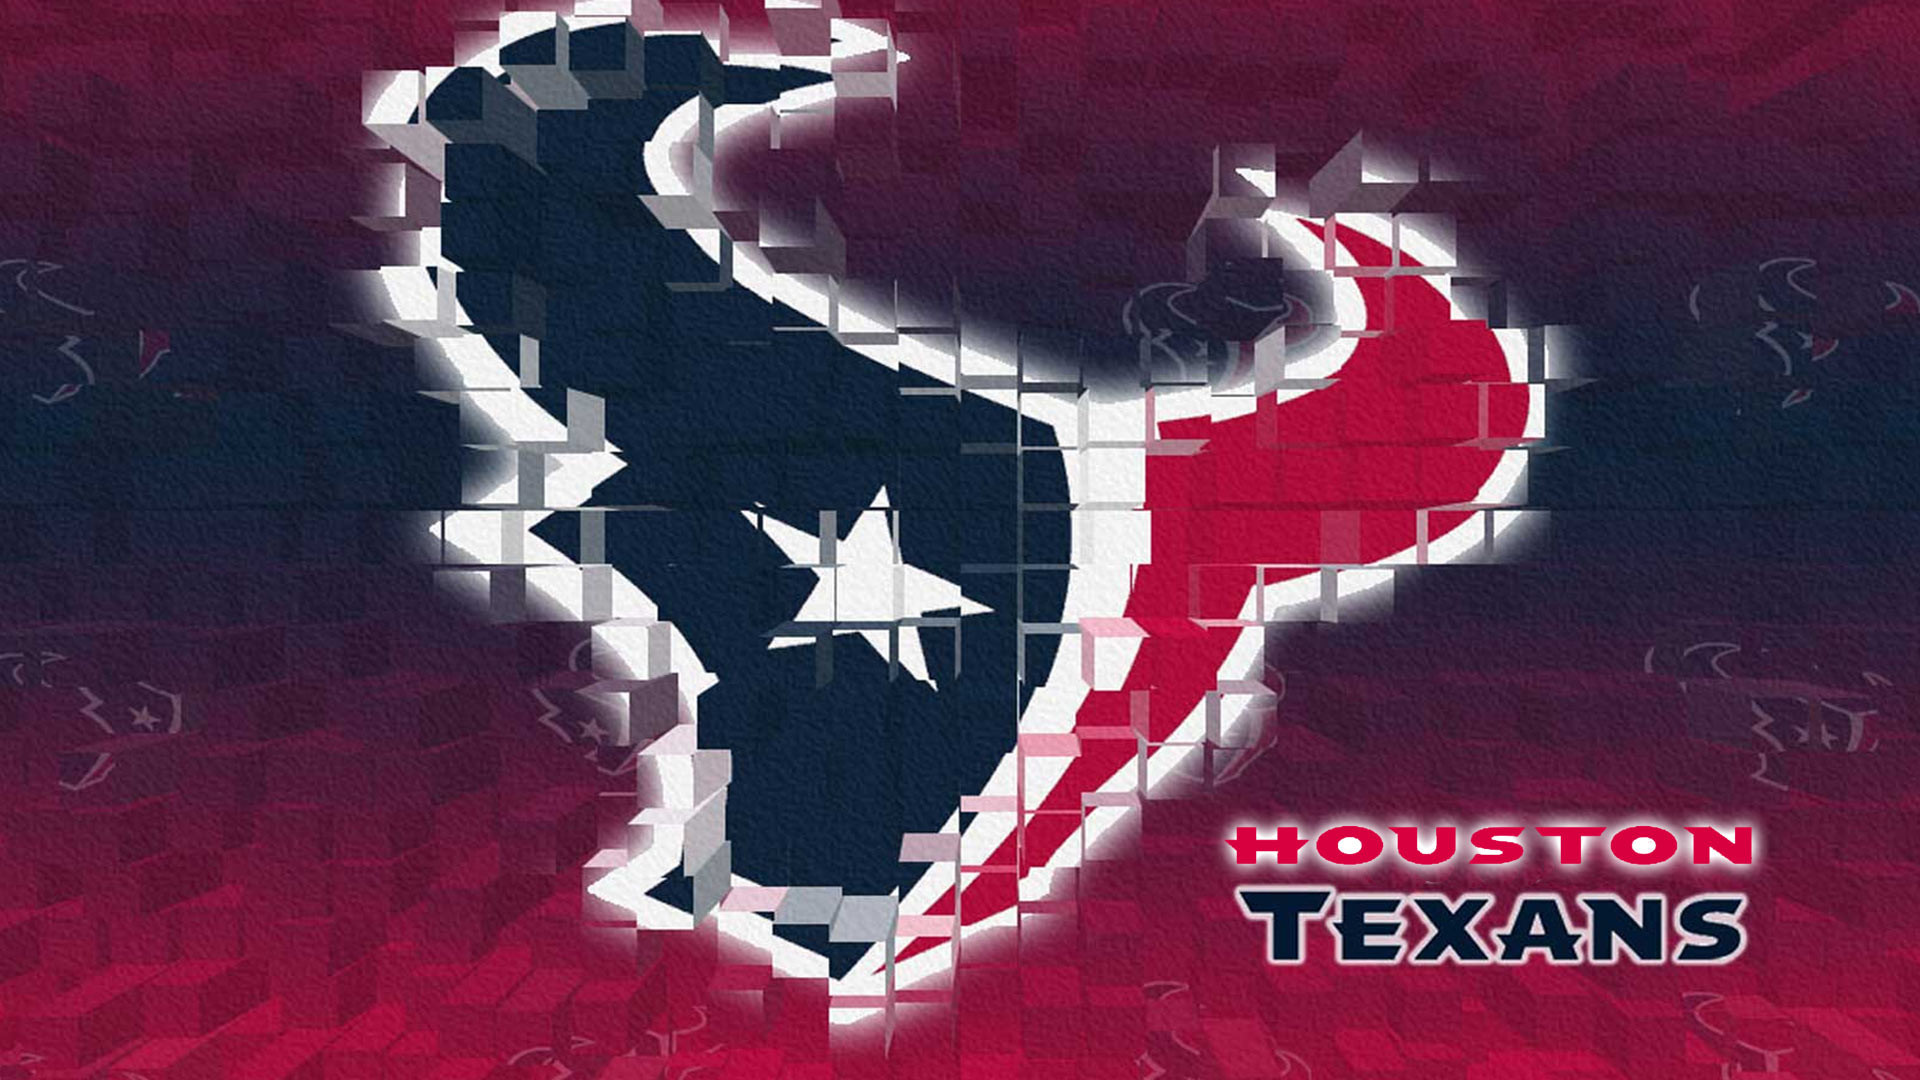 1920x1080 Houston Texans logo Hd 1080p Wallpaper screen size 1920X1080